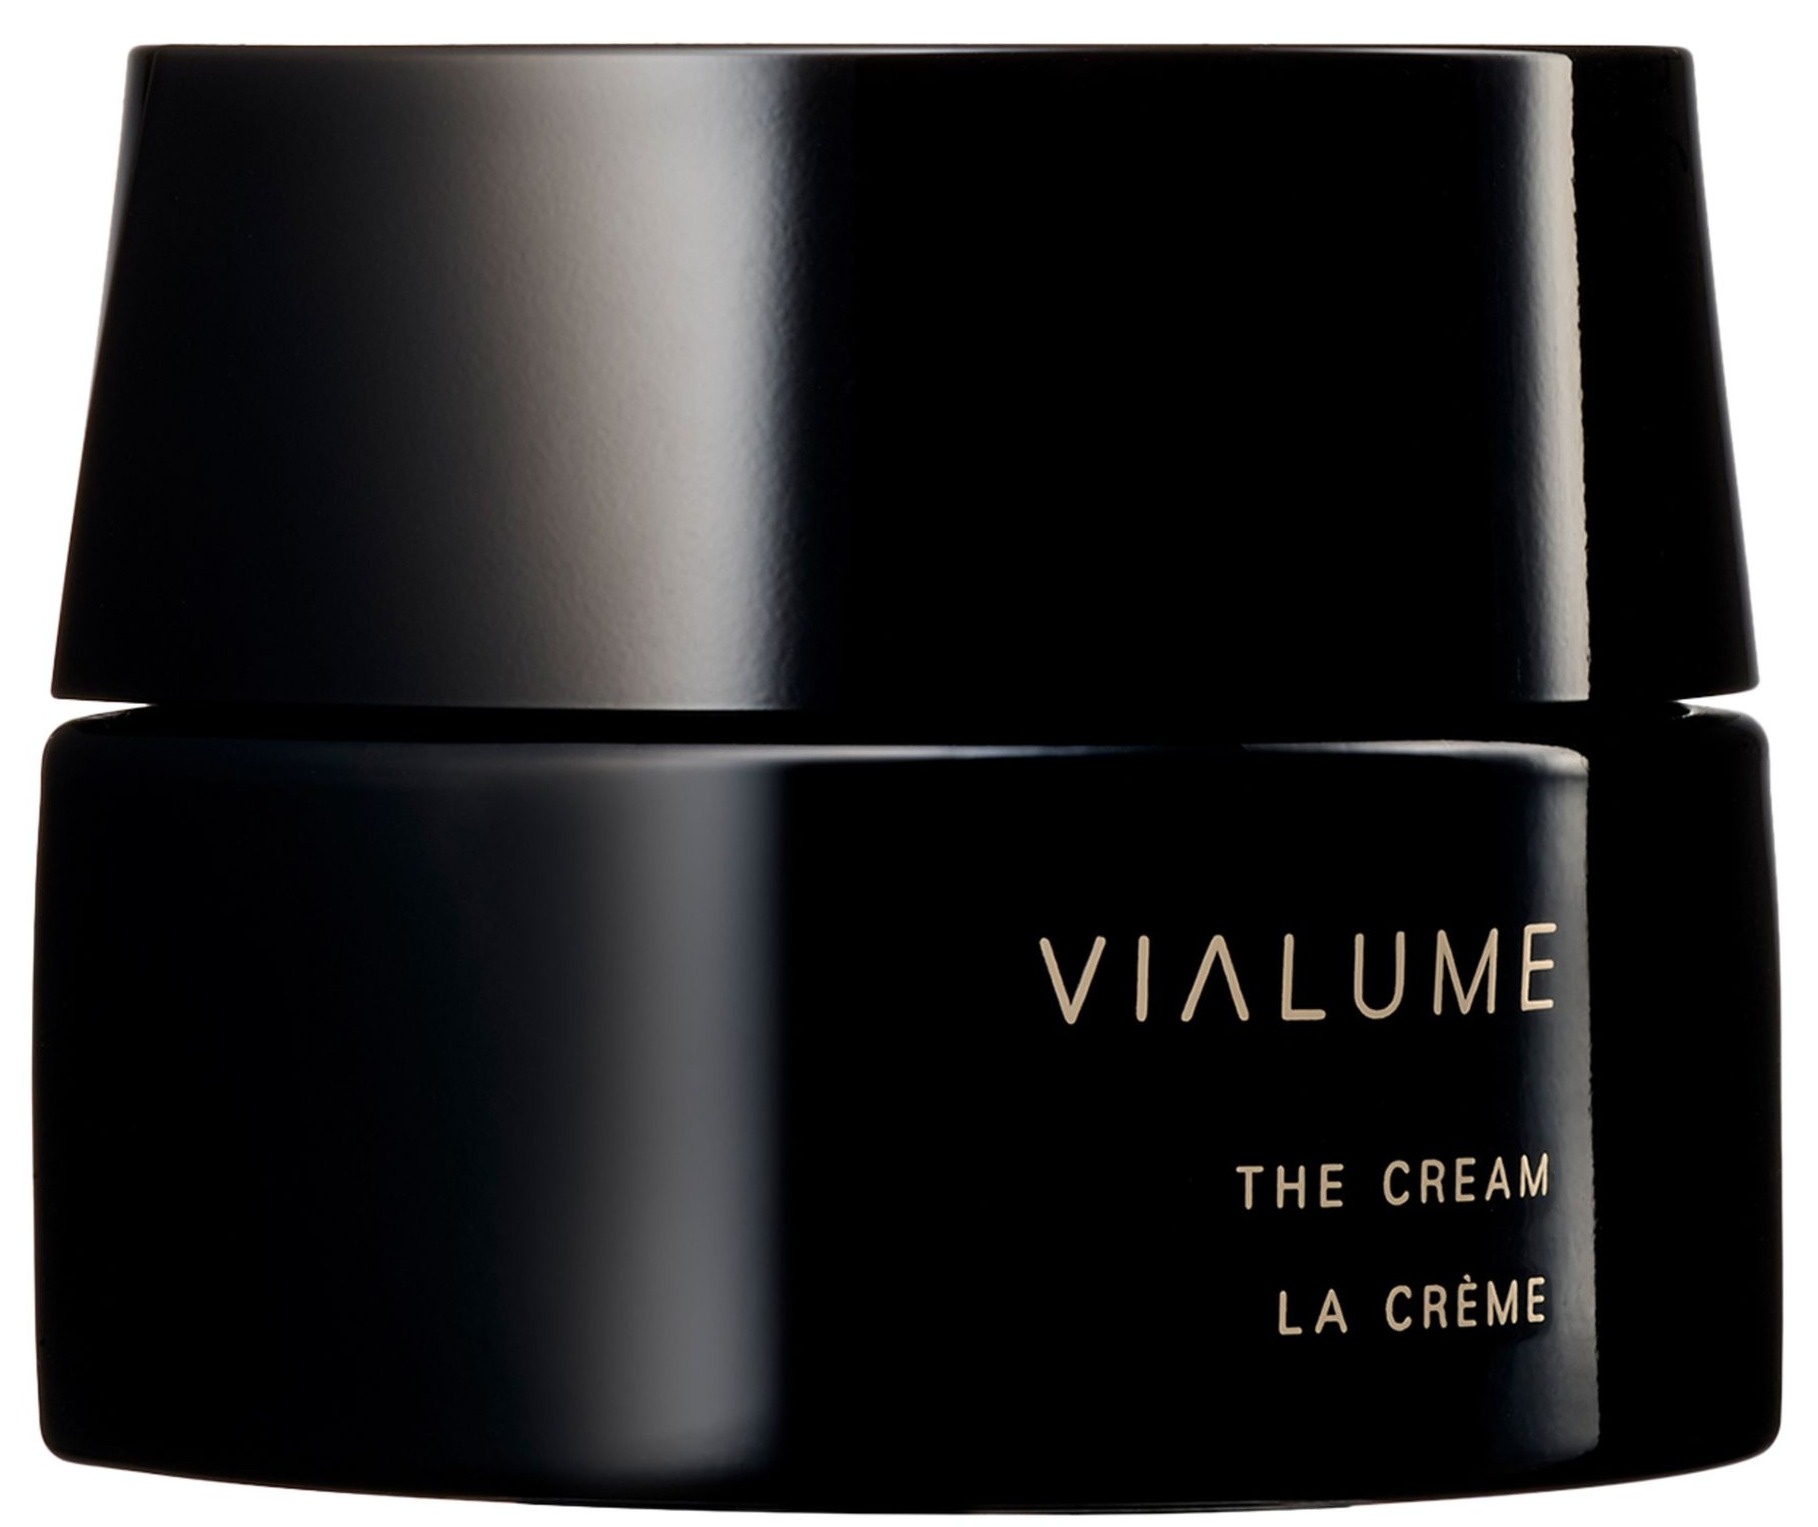 Suqqu Vialume The Cream